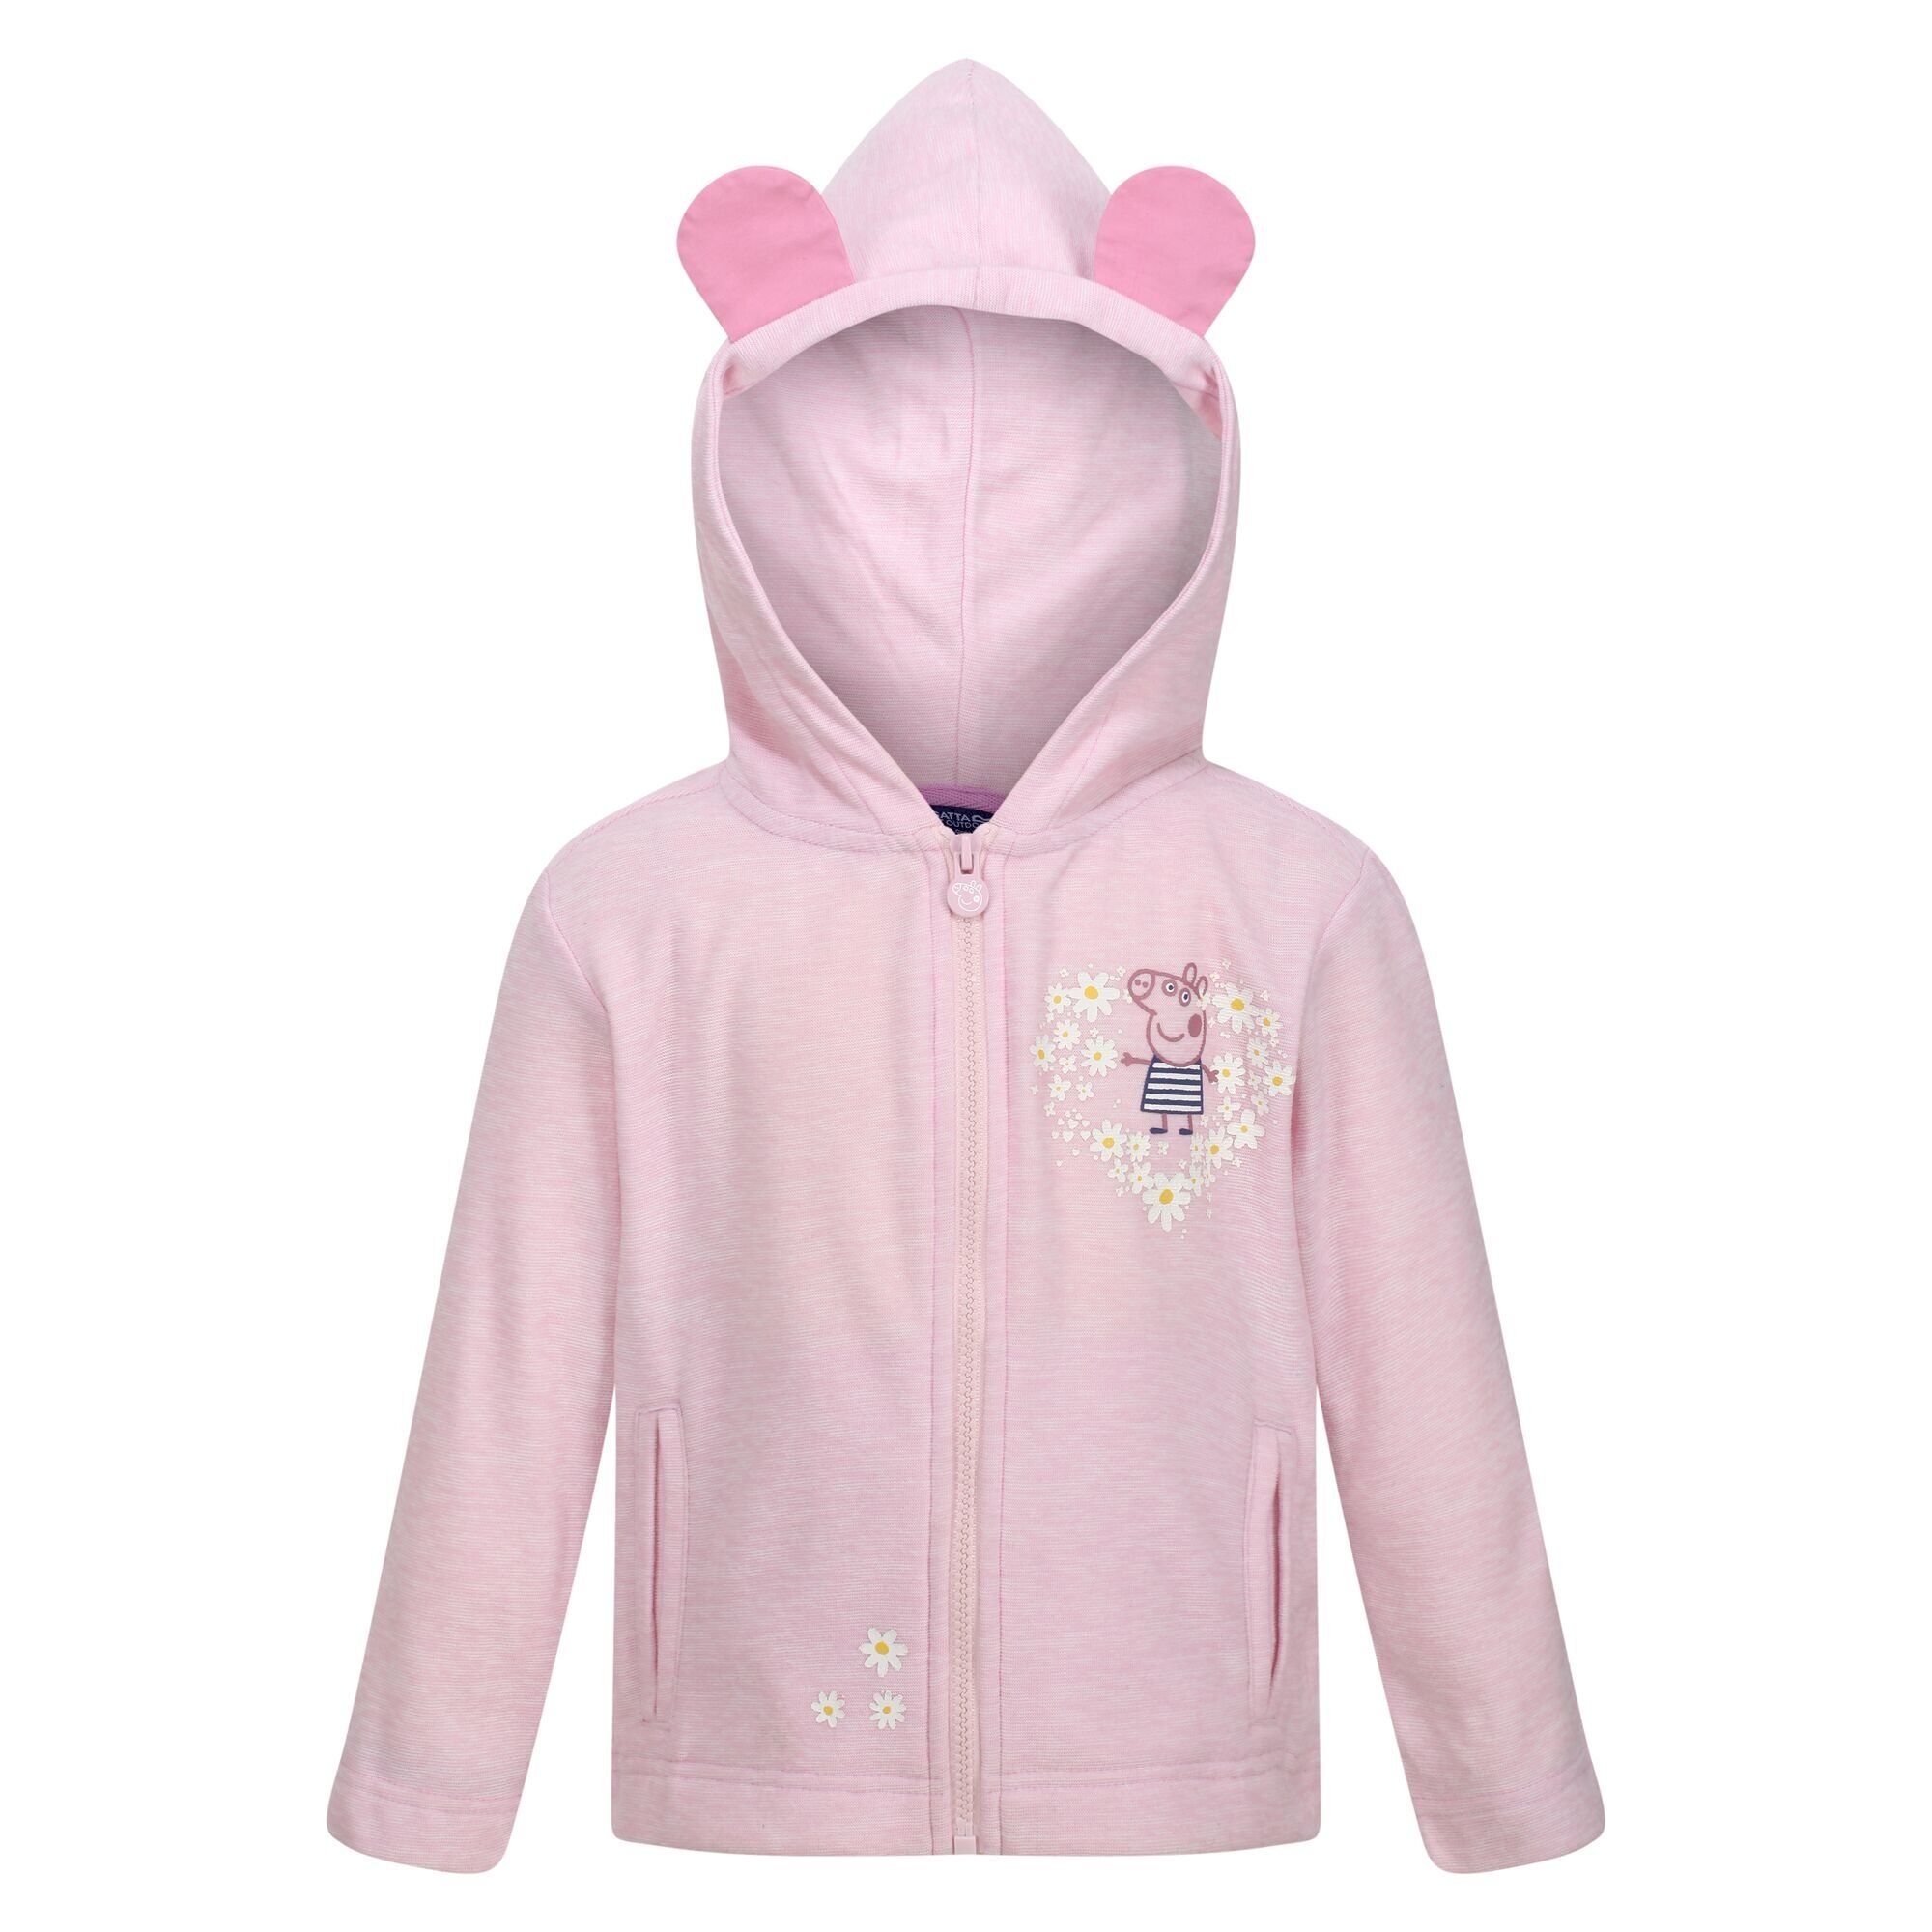 Afbeelding van Regatta Childrens/kids peppa pig floral fleece full zip hoodie